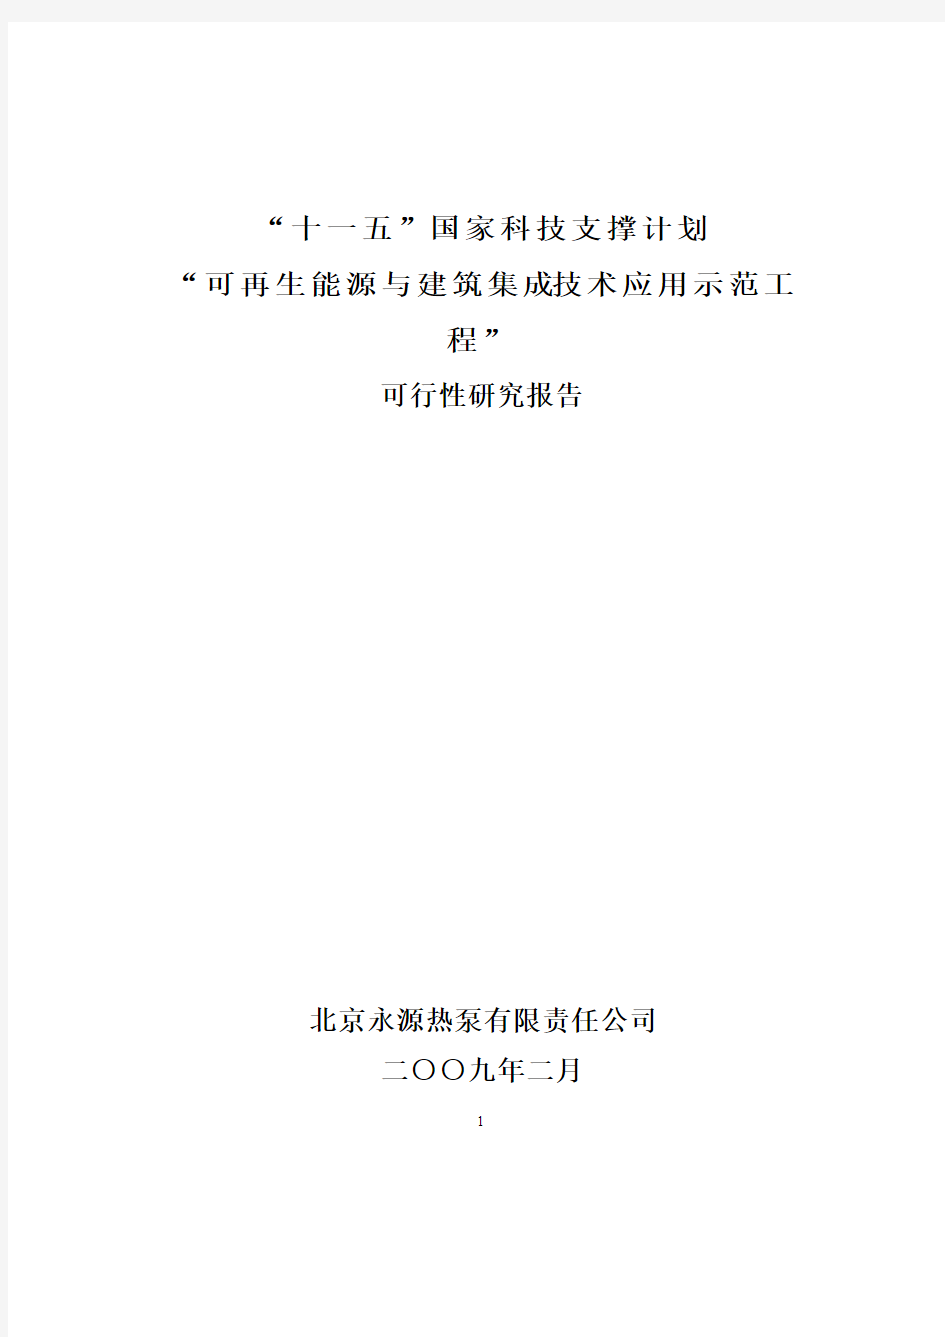 可行性研究报告(黑龙江司法警官职业技术学院)090211